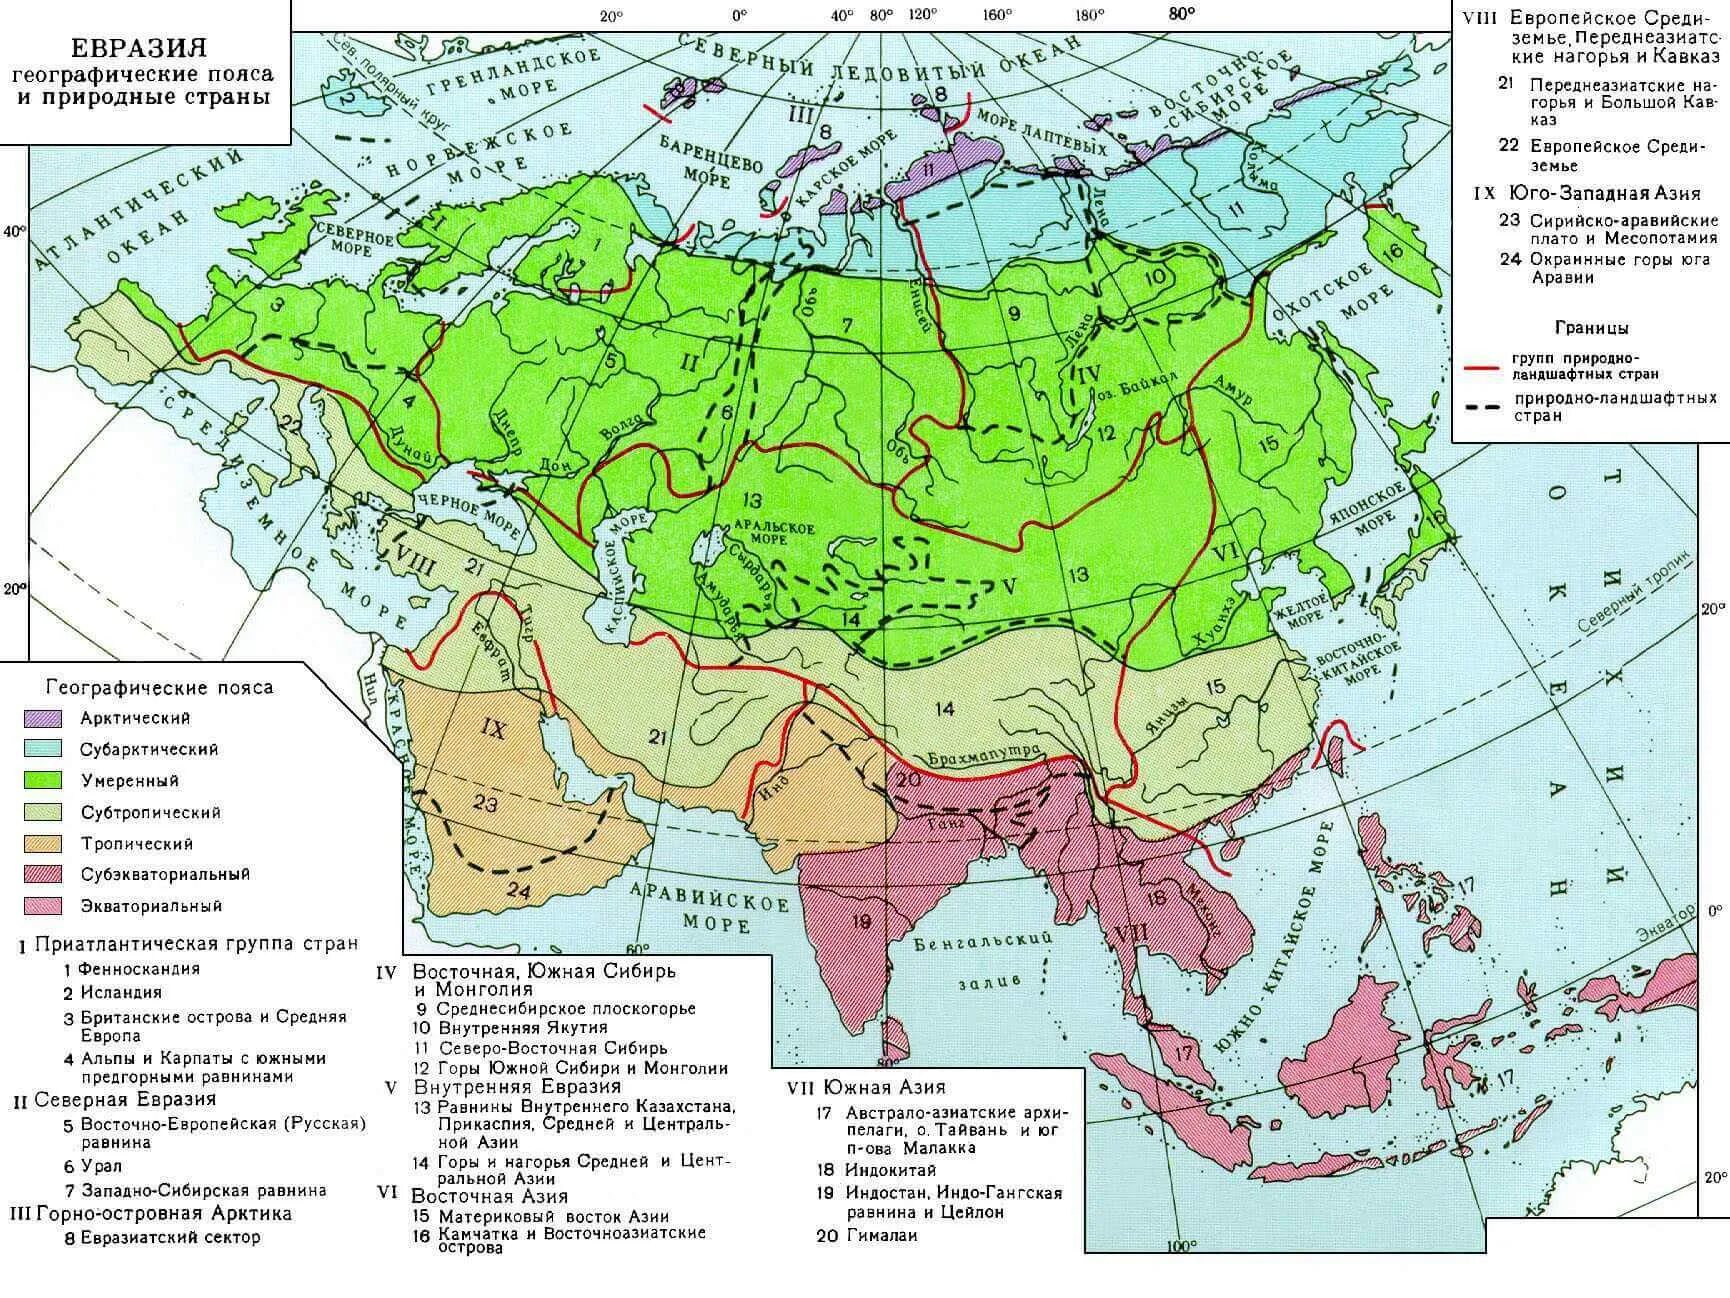 Азия урок 7 класс. Карта климатических поясов Азии. Карта климатических поясов Евразии. Климатическая карта Евразии климатические пояса. Карта климатических зон Евразии.